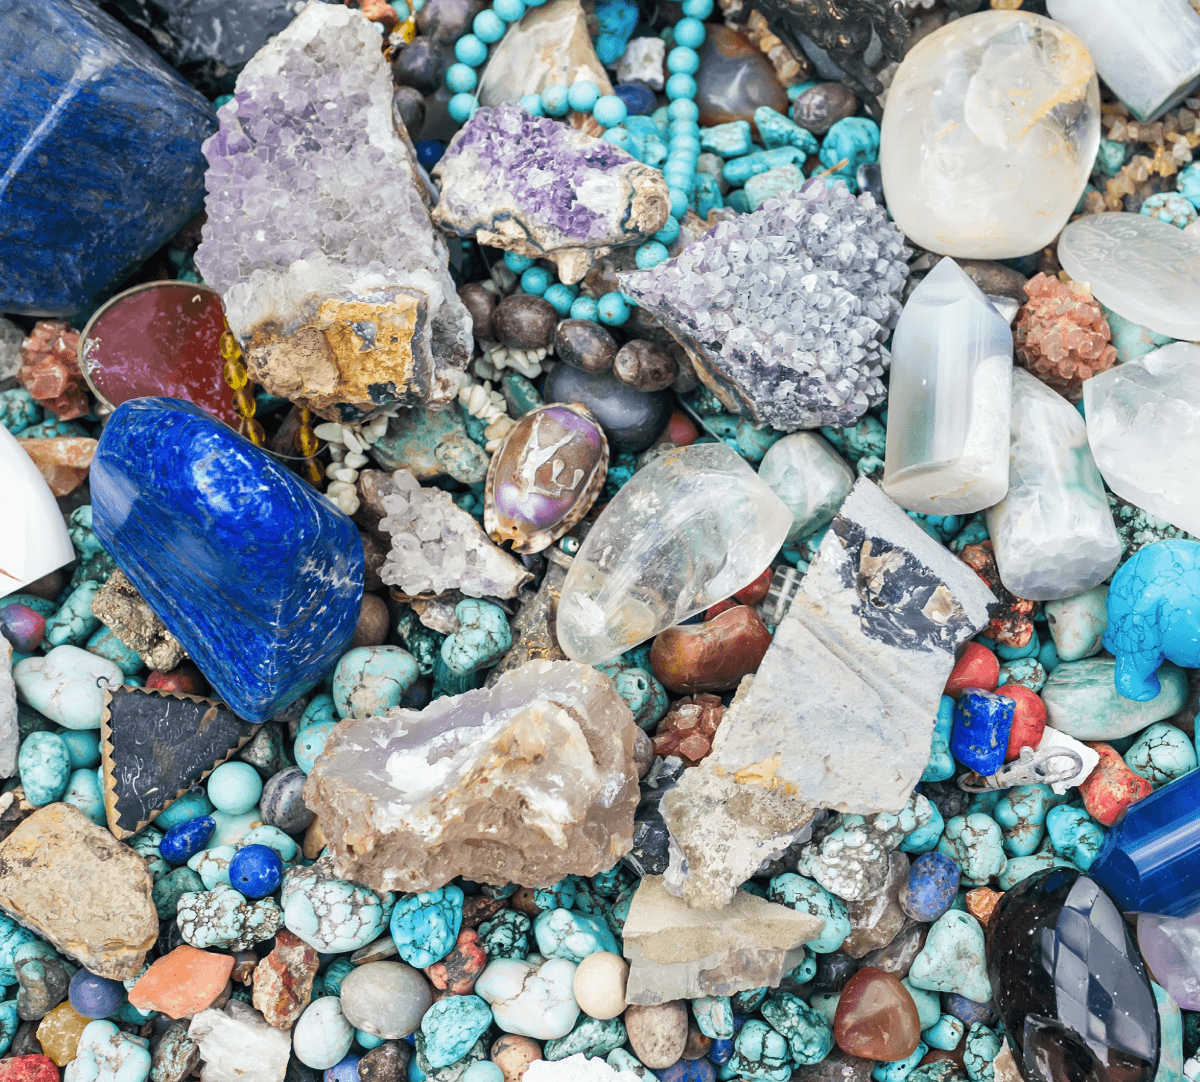 Les roches et minéraux